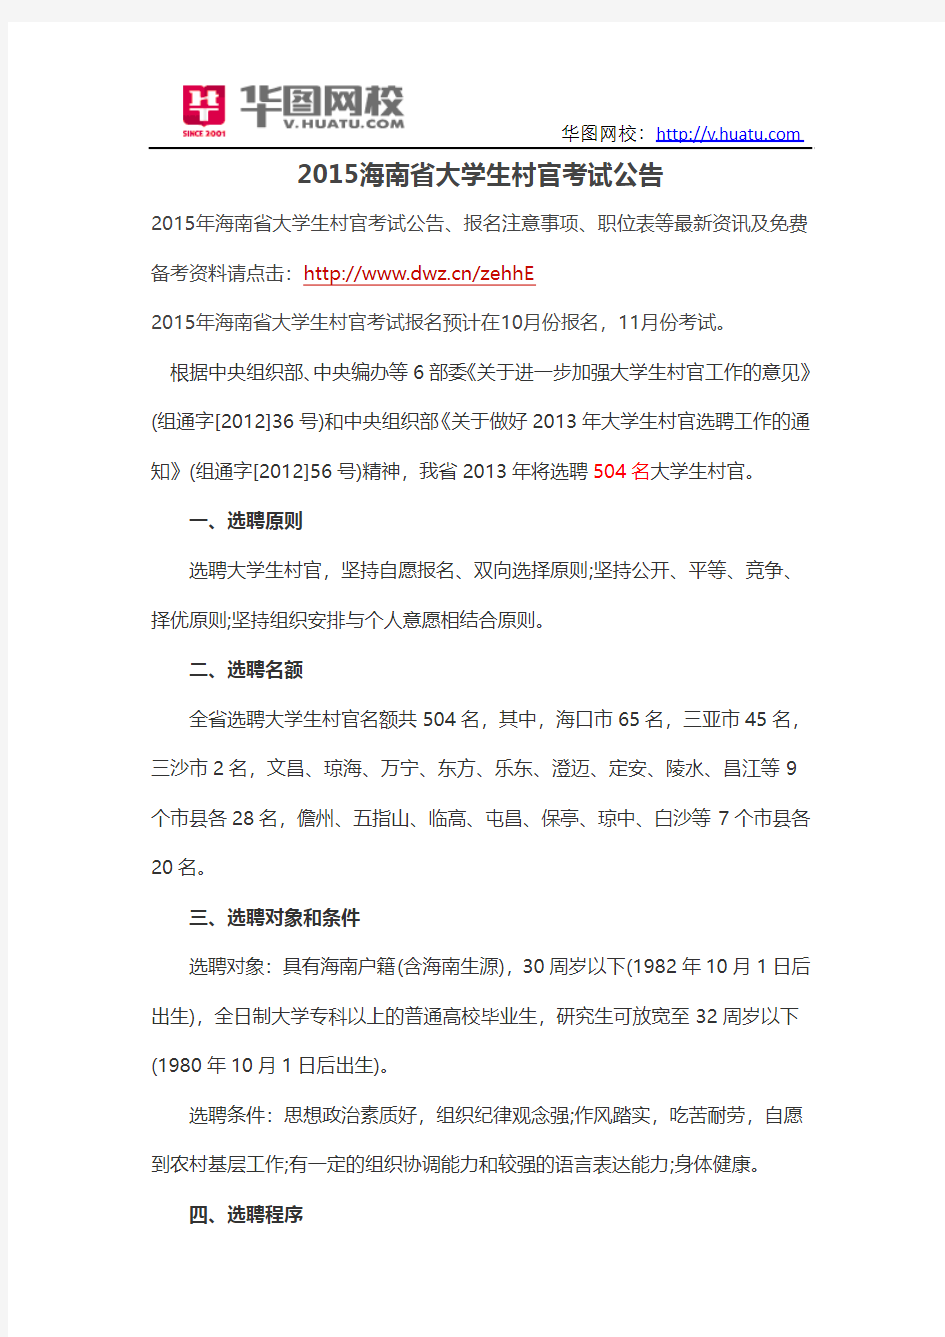 2015海南省大学生村官考试公告